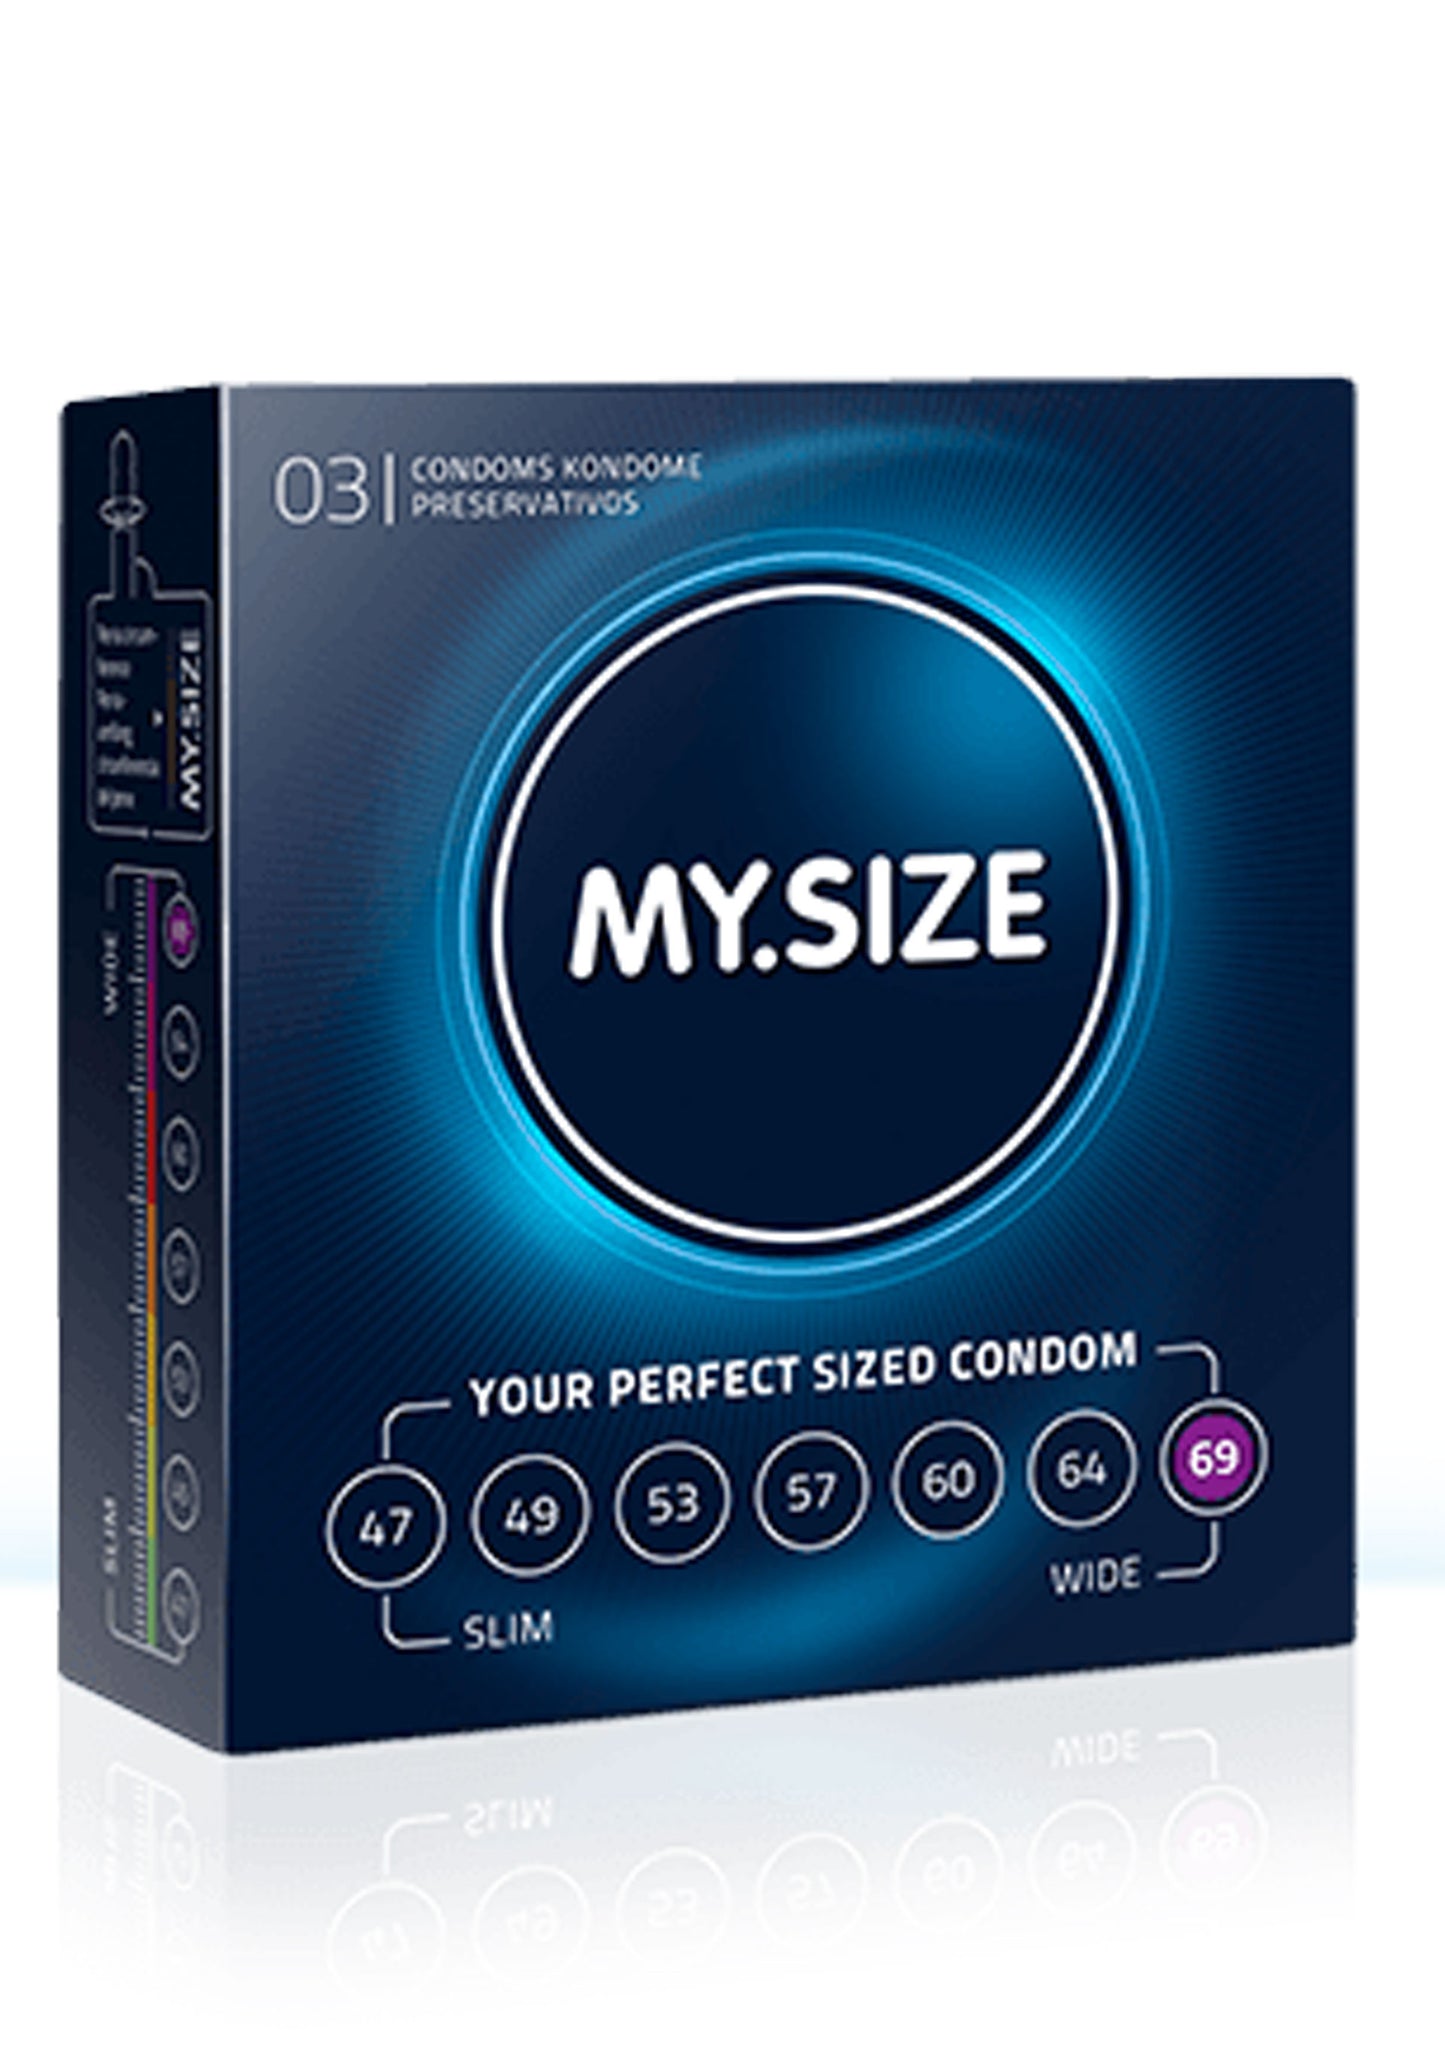 Preservativi MY.SIZE 69mm Condoms 3pcs